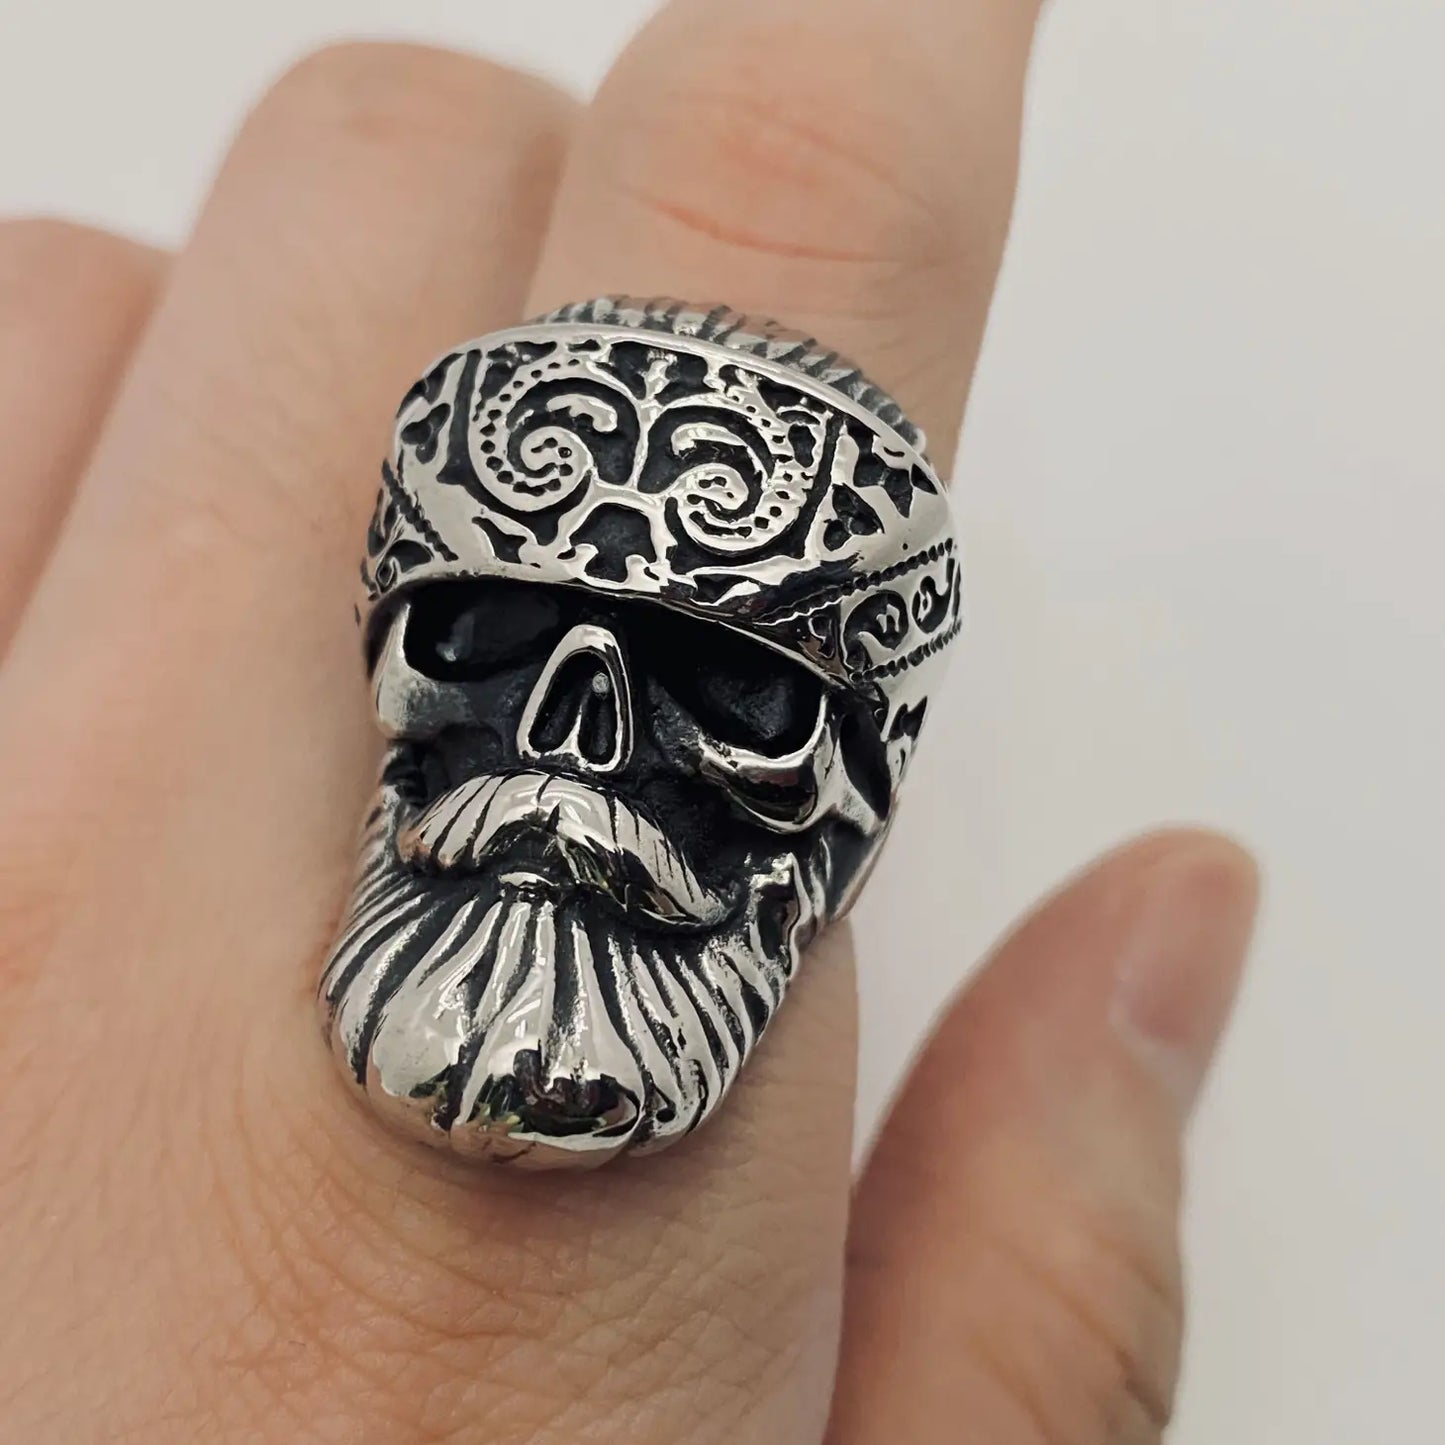 Beard Skull Ring